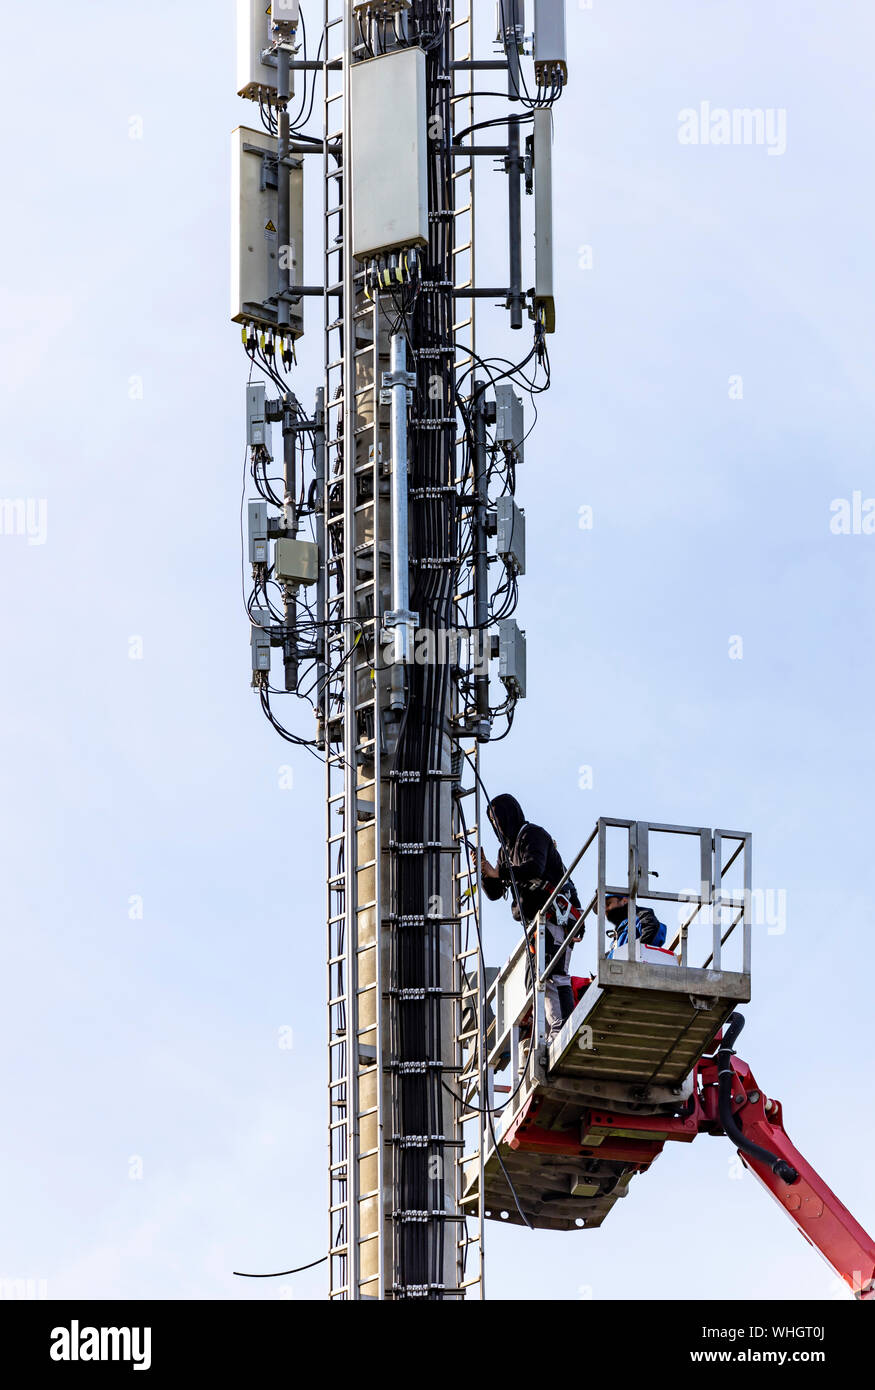 Radio Mast, Mobilfunk, Telefon, aktualisiert werden, mit neuen Antennen ausgestattet. Deutschland Stockfoto